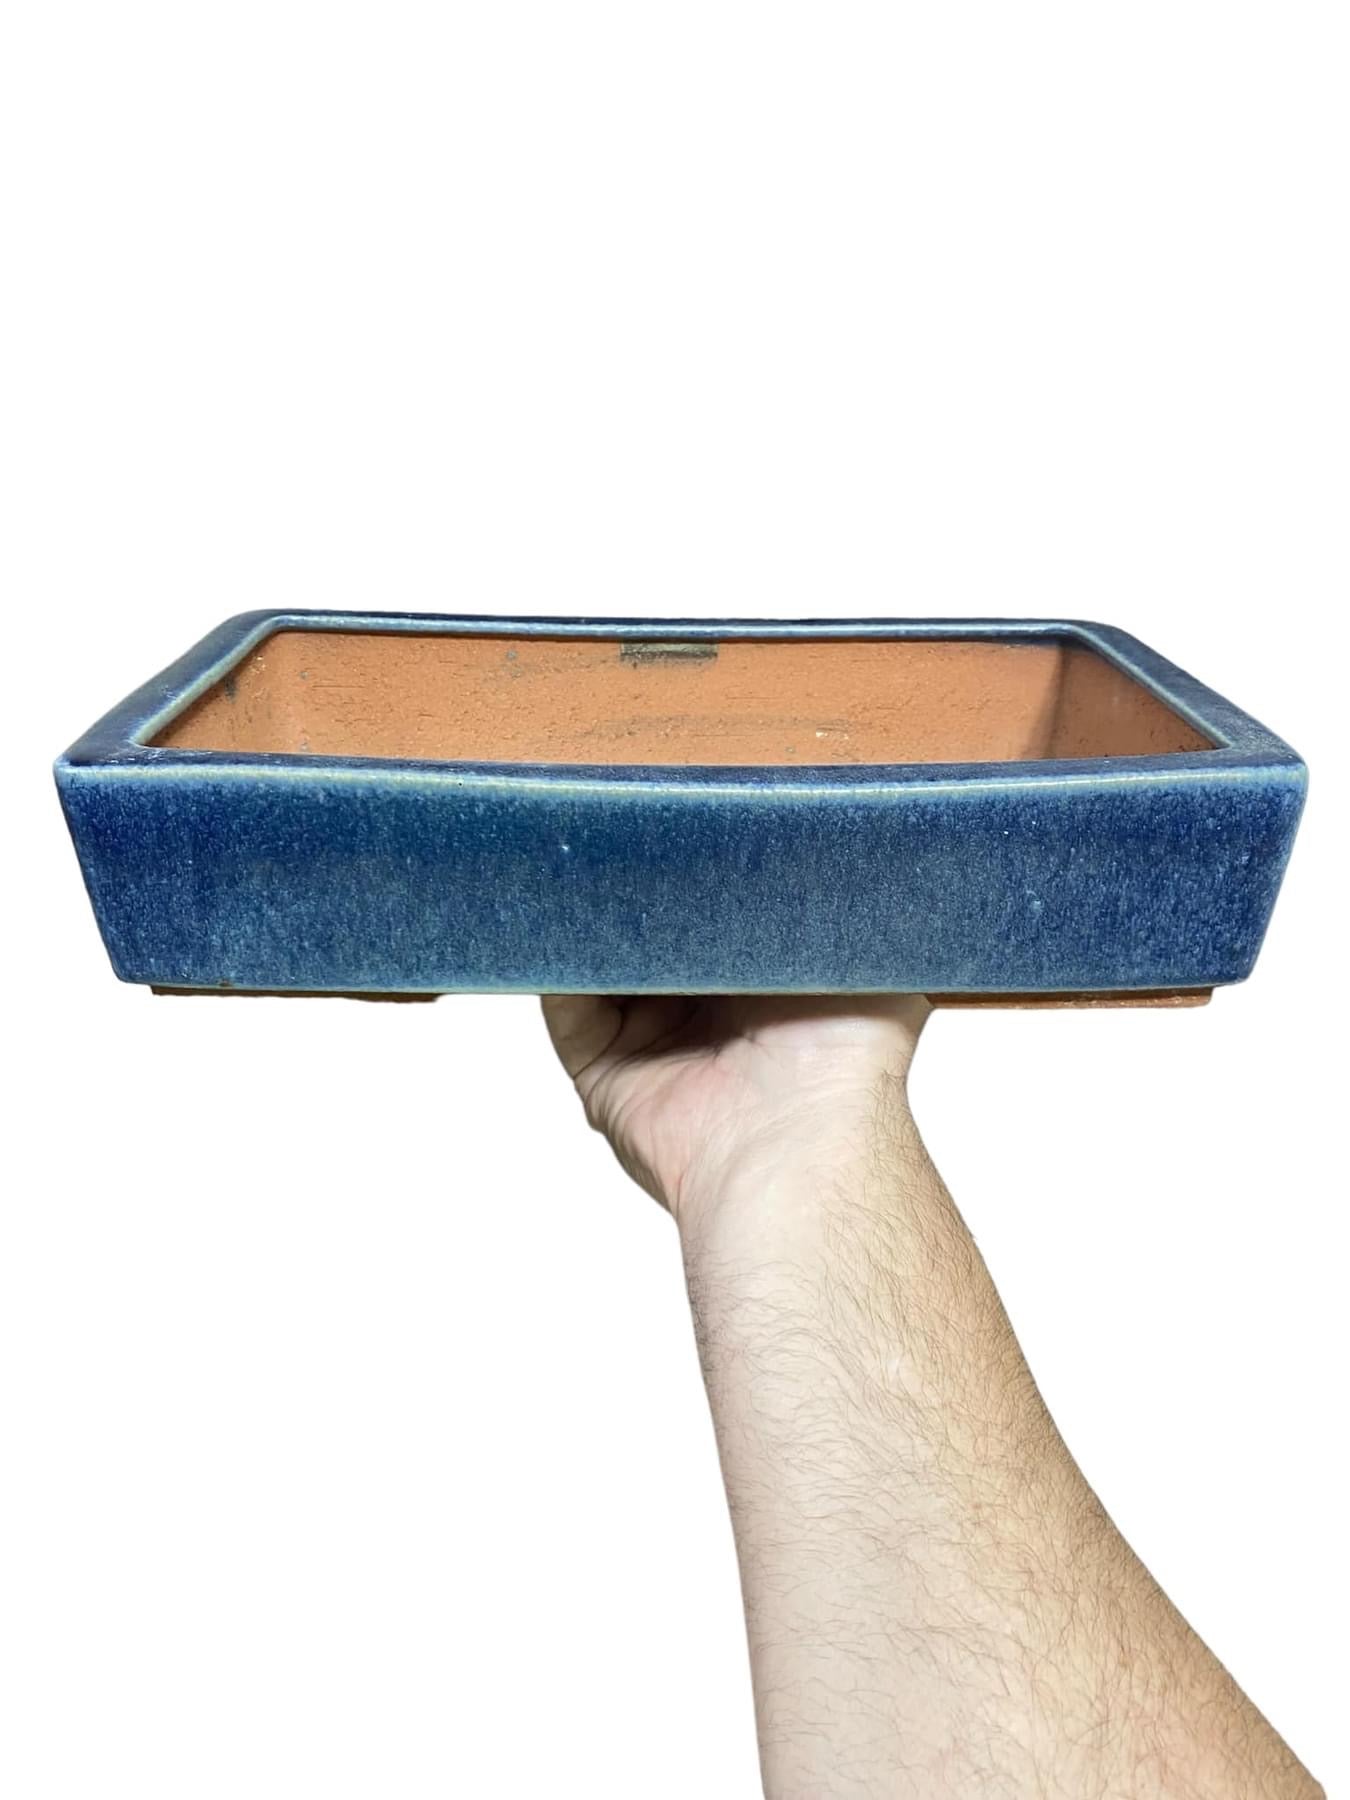 Yozan - 12” Blue Glazed Rectangle Bonsai Pot